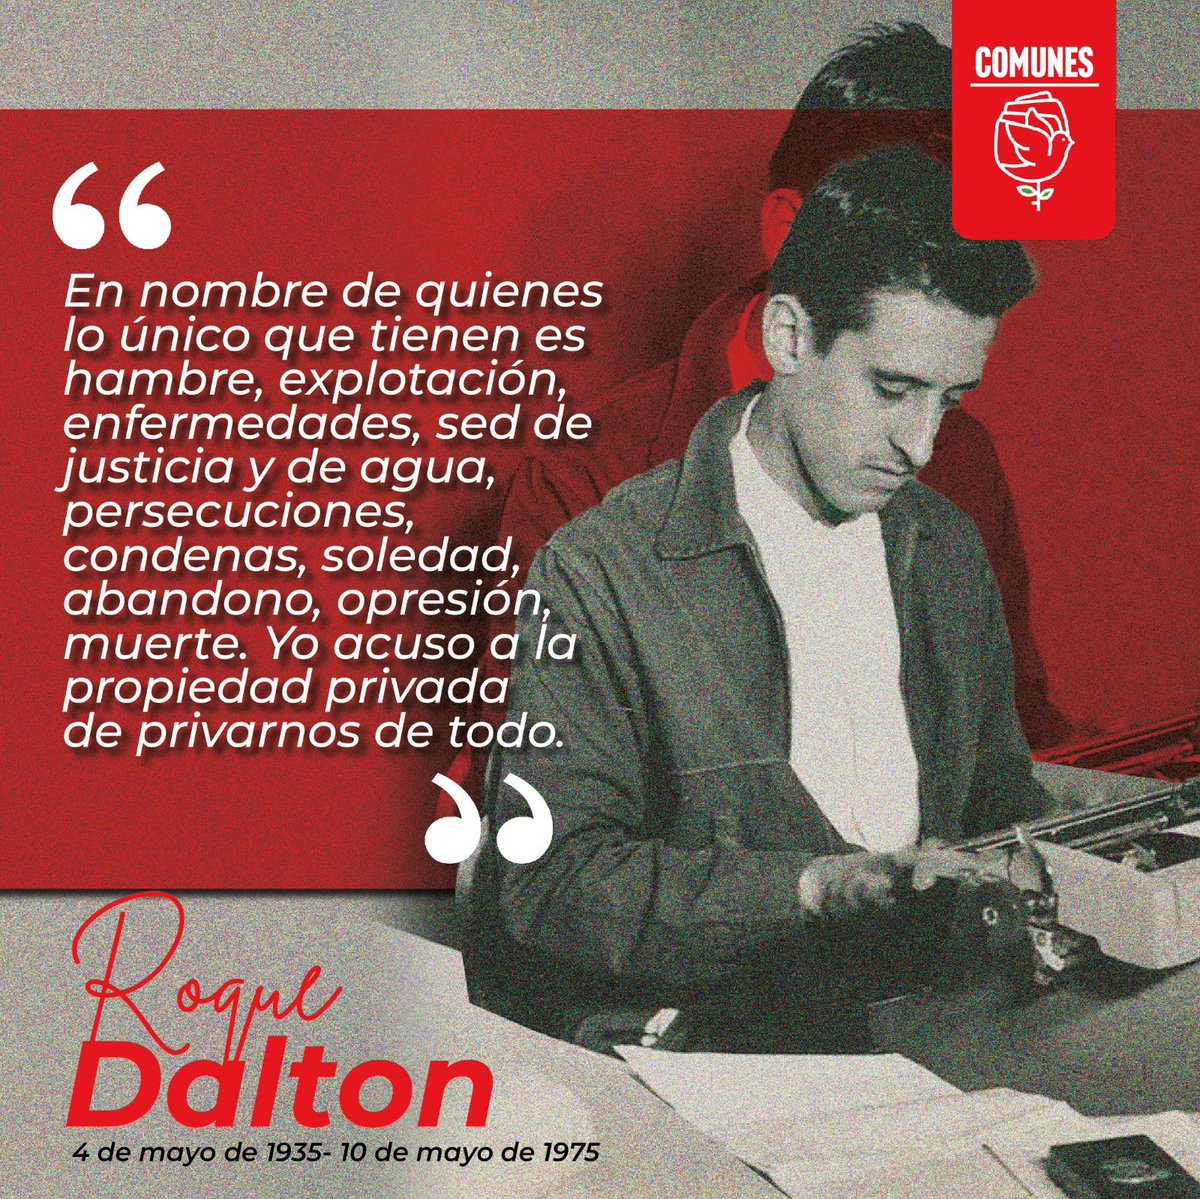 El 10 de mayo de 1975 fue asesinado #RoqueDalton, poeta Salvadoreño. Su asesinato fue un crimen de guerra y un atentado a la belleza y a la poesía humana, un acto cobarde contra un hombre que quiso mostrar la contradicción y la injusticia desde el arte. No lo olvidamos✊🏻